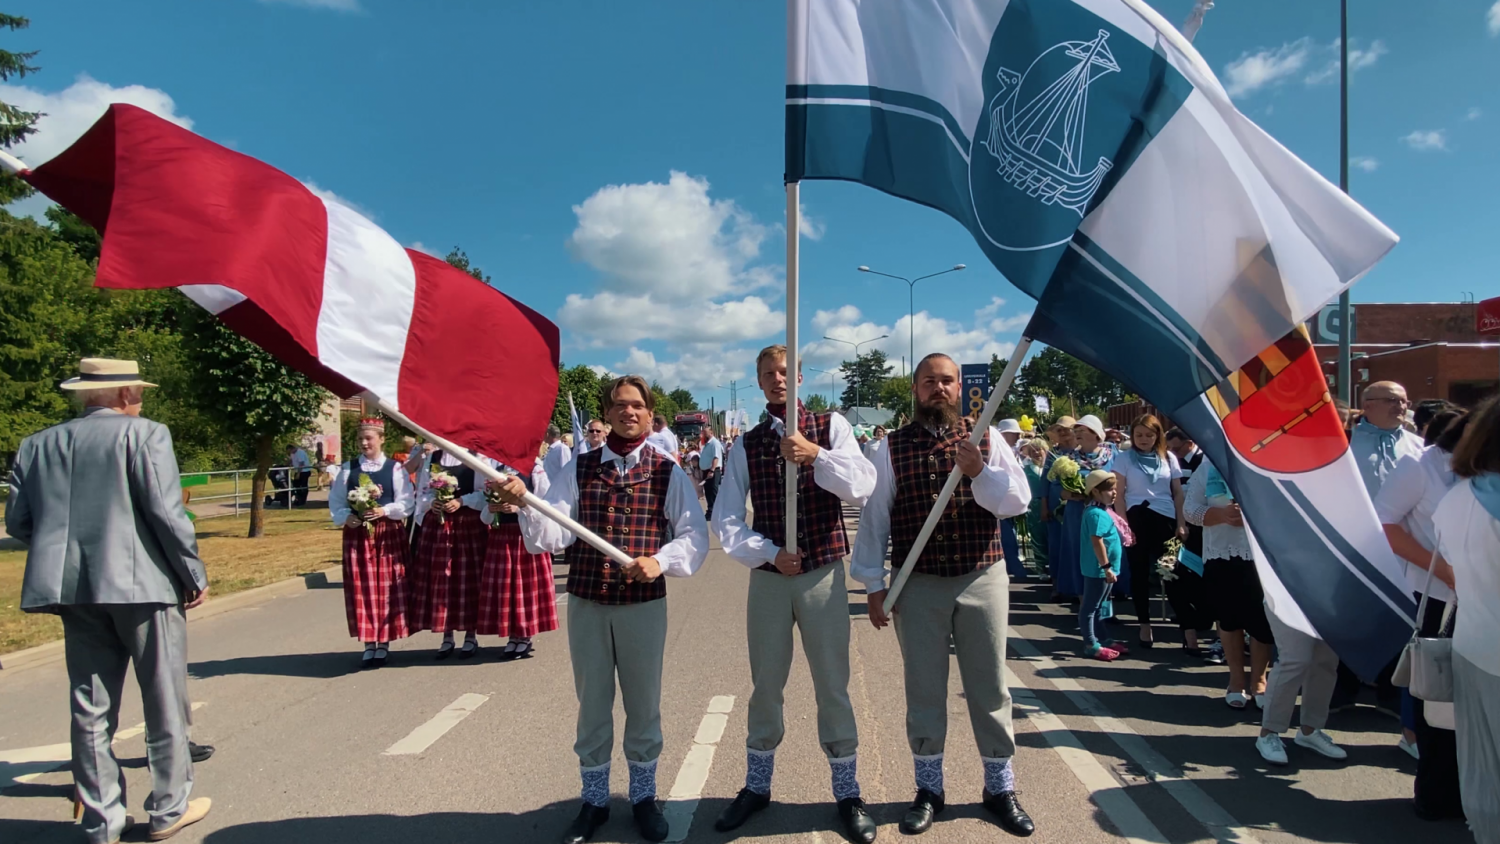 Trīs puiši tautastērpos tur Latvijas, Krāslavas un Krāslavas novada karogus. Fonā cilvēku pulks